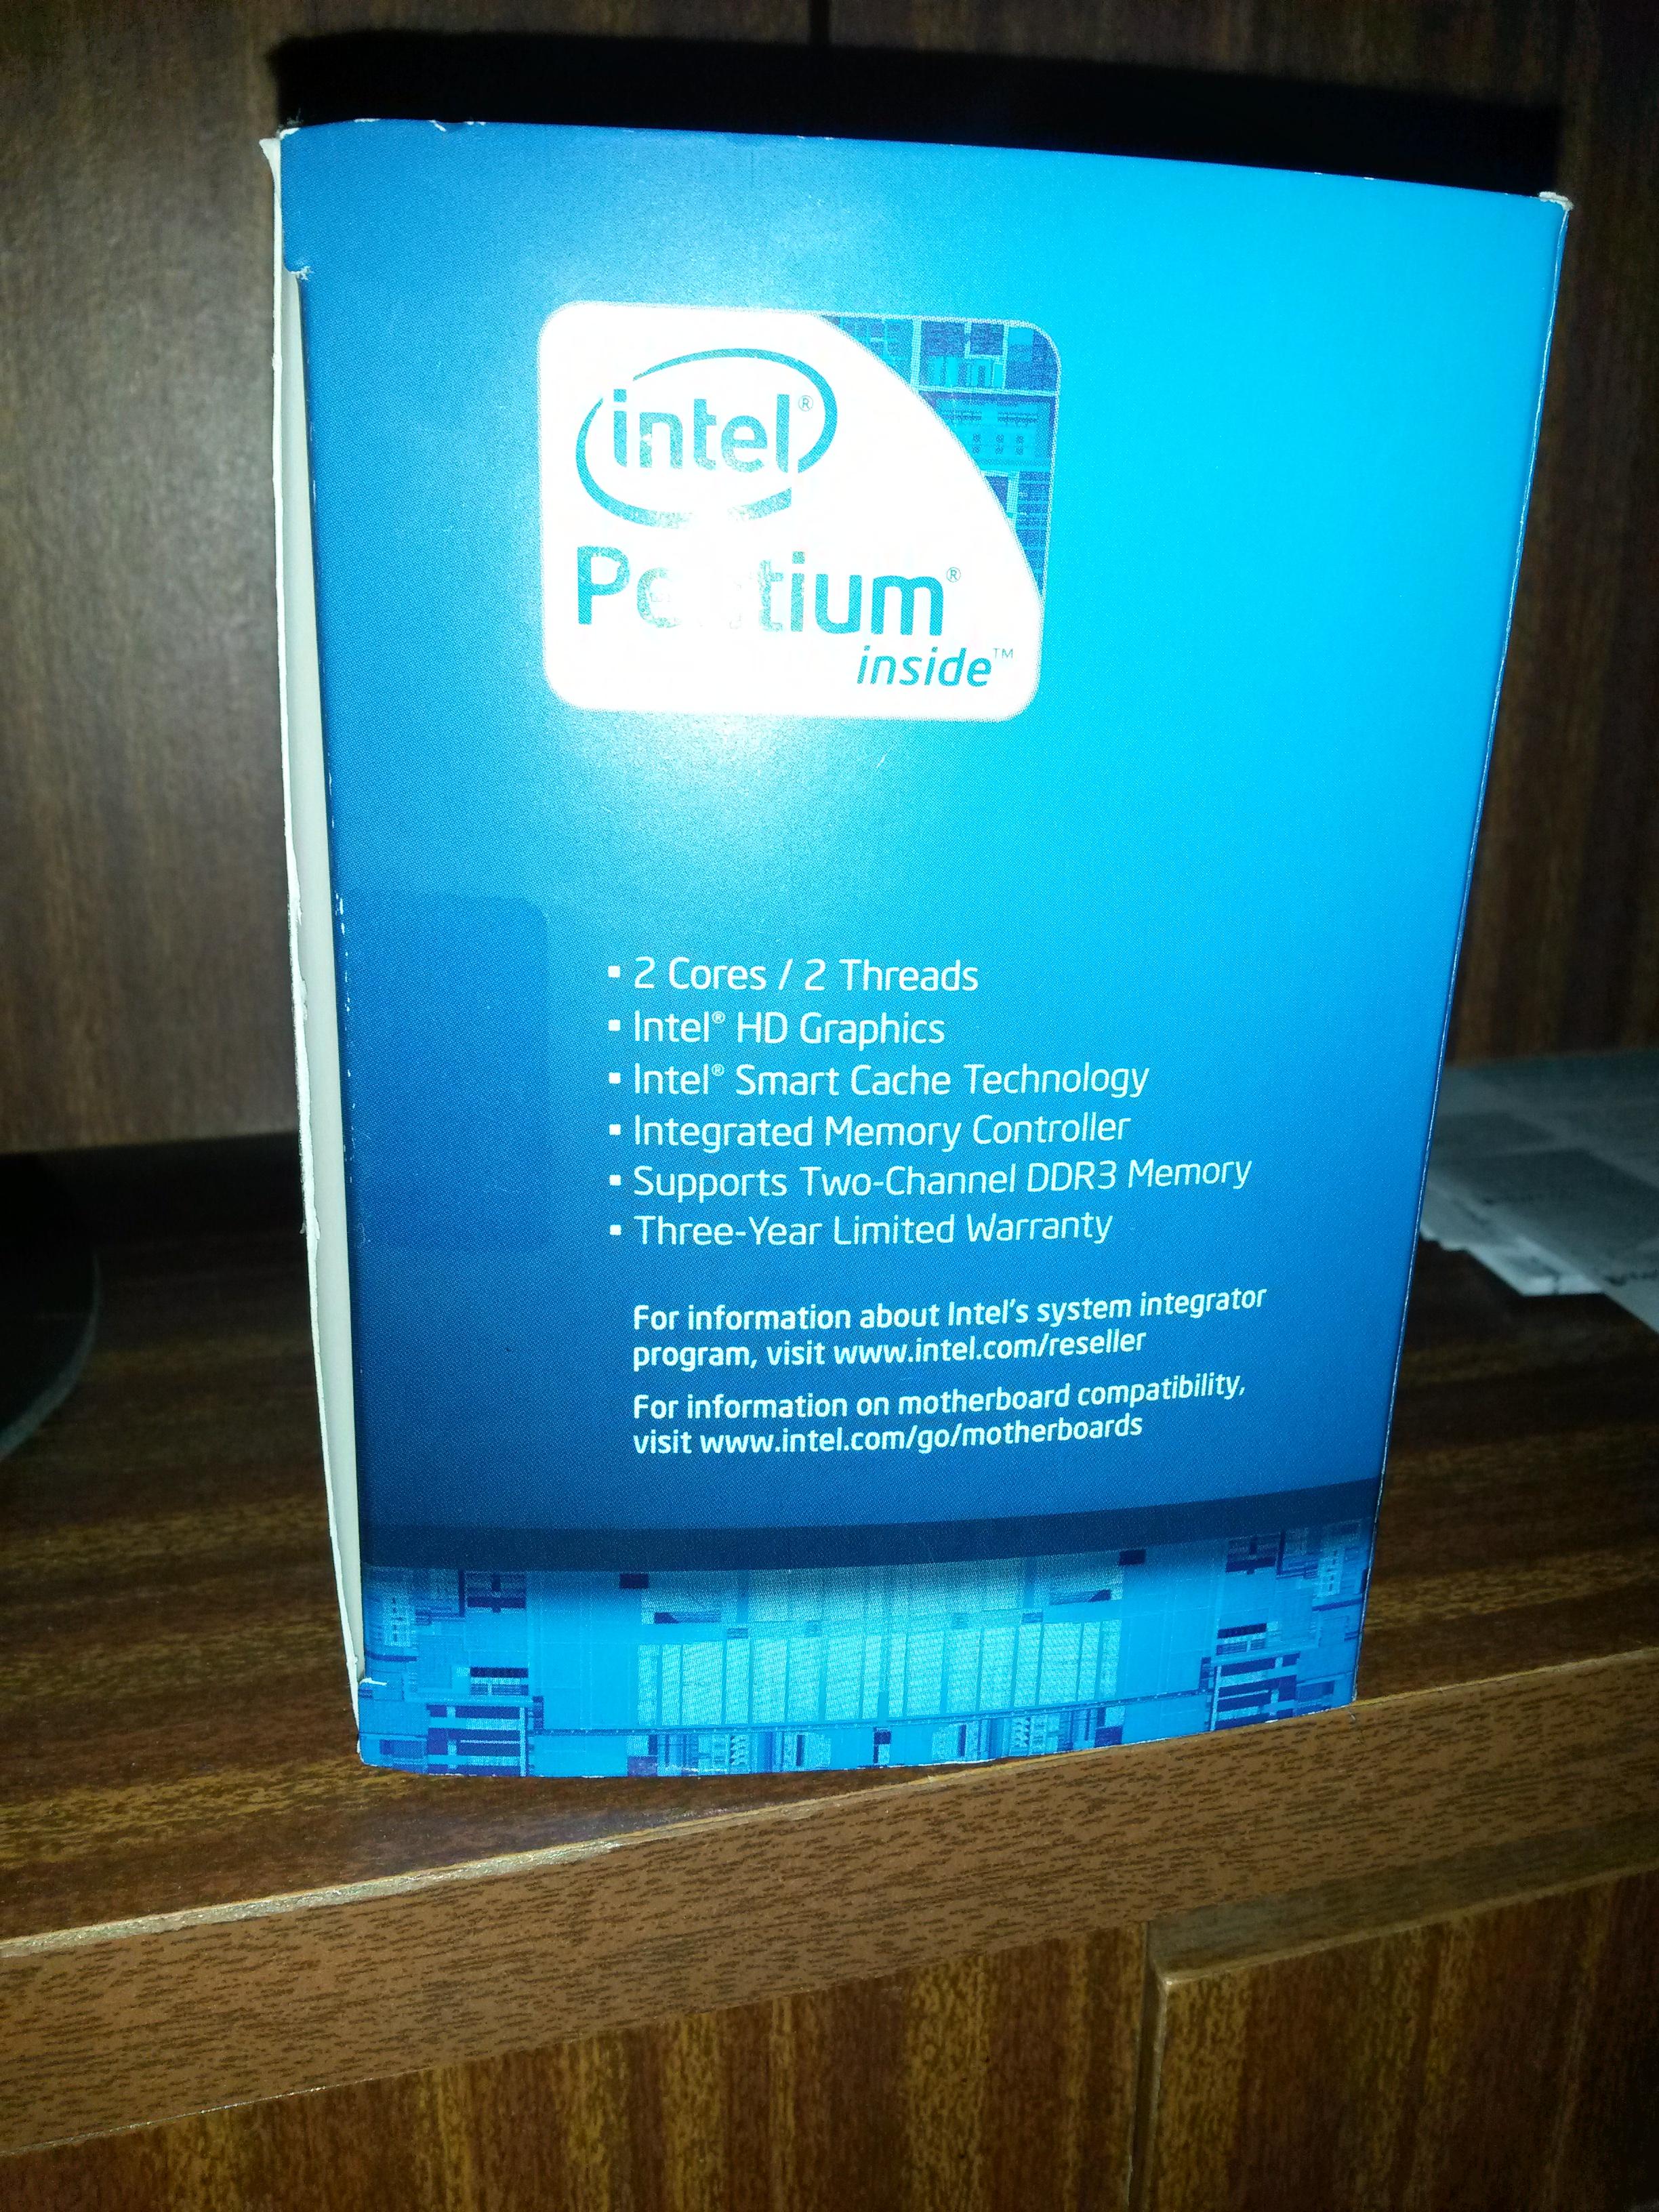 Intel pentium g2130 обзор